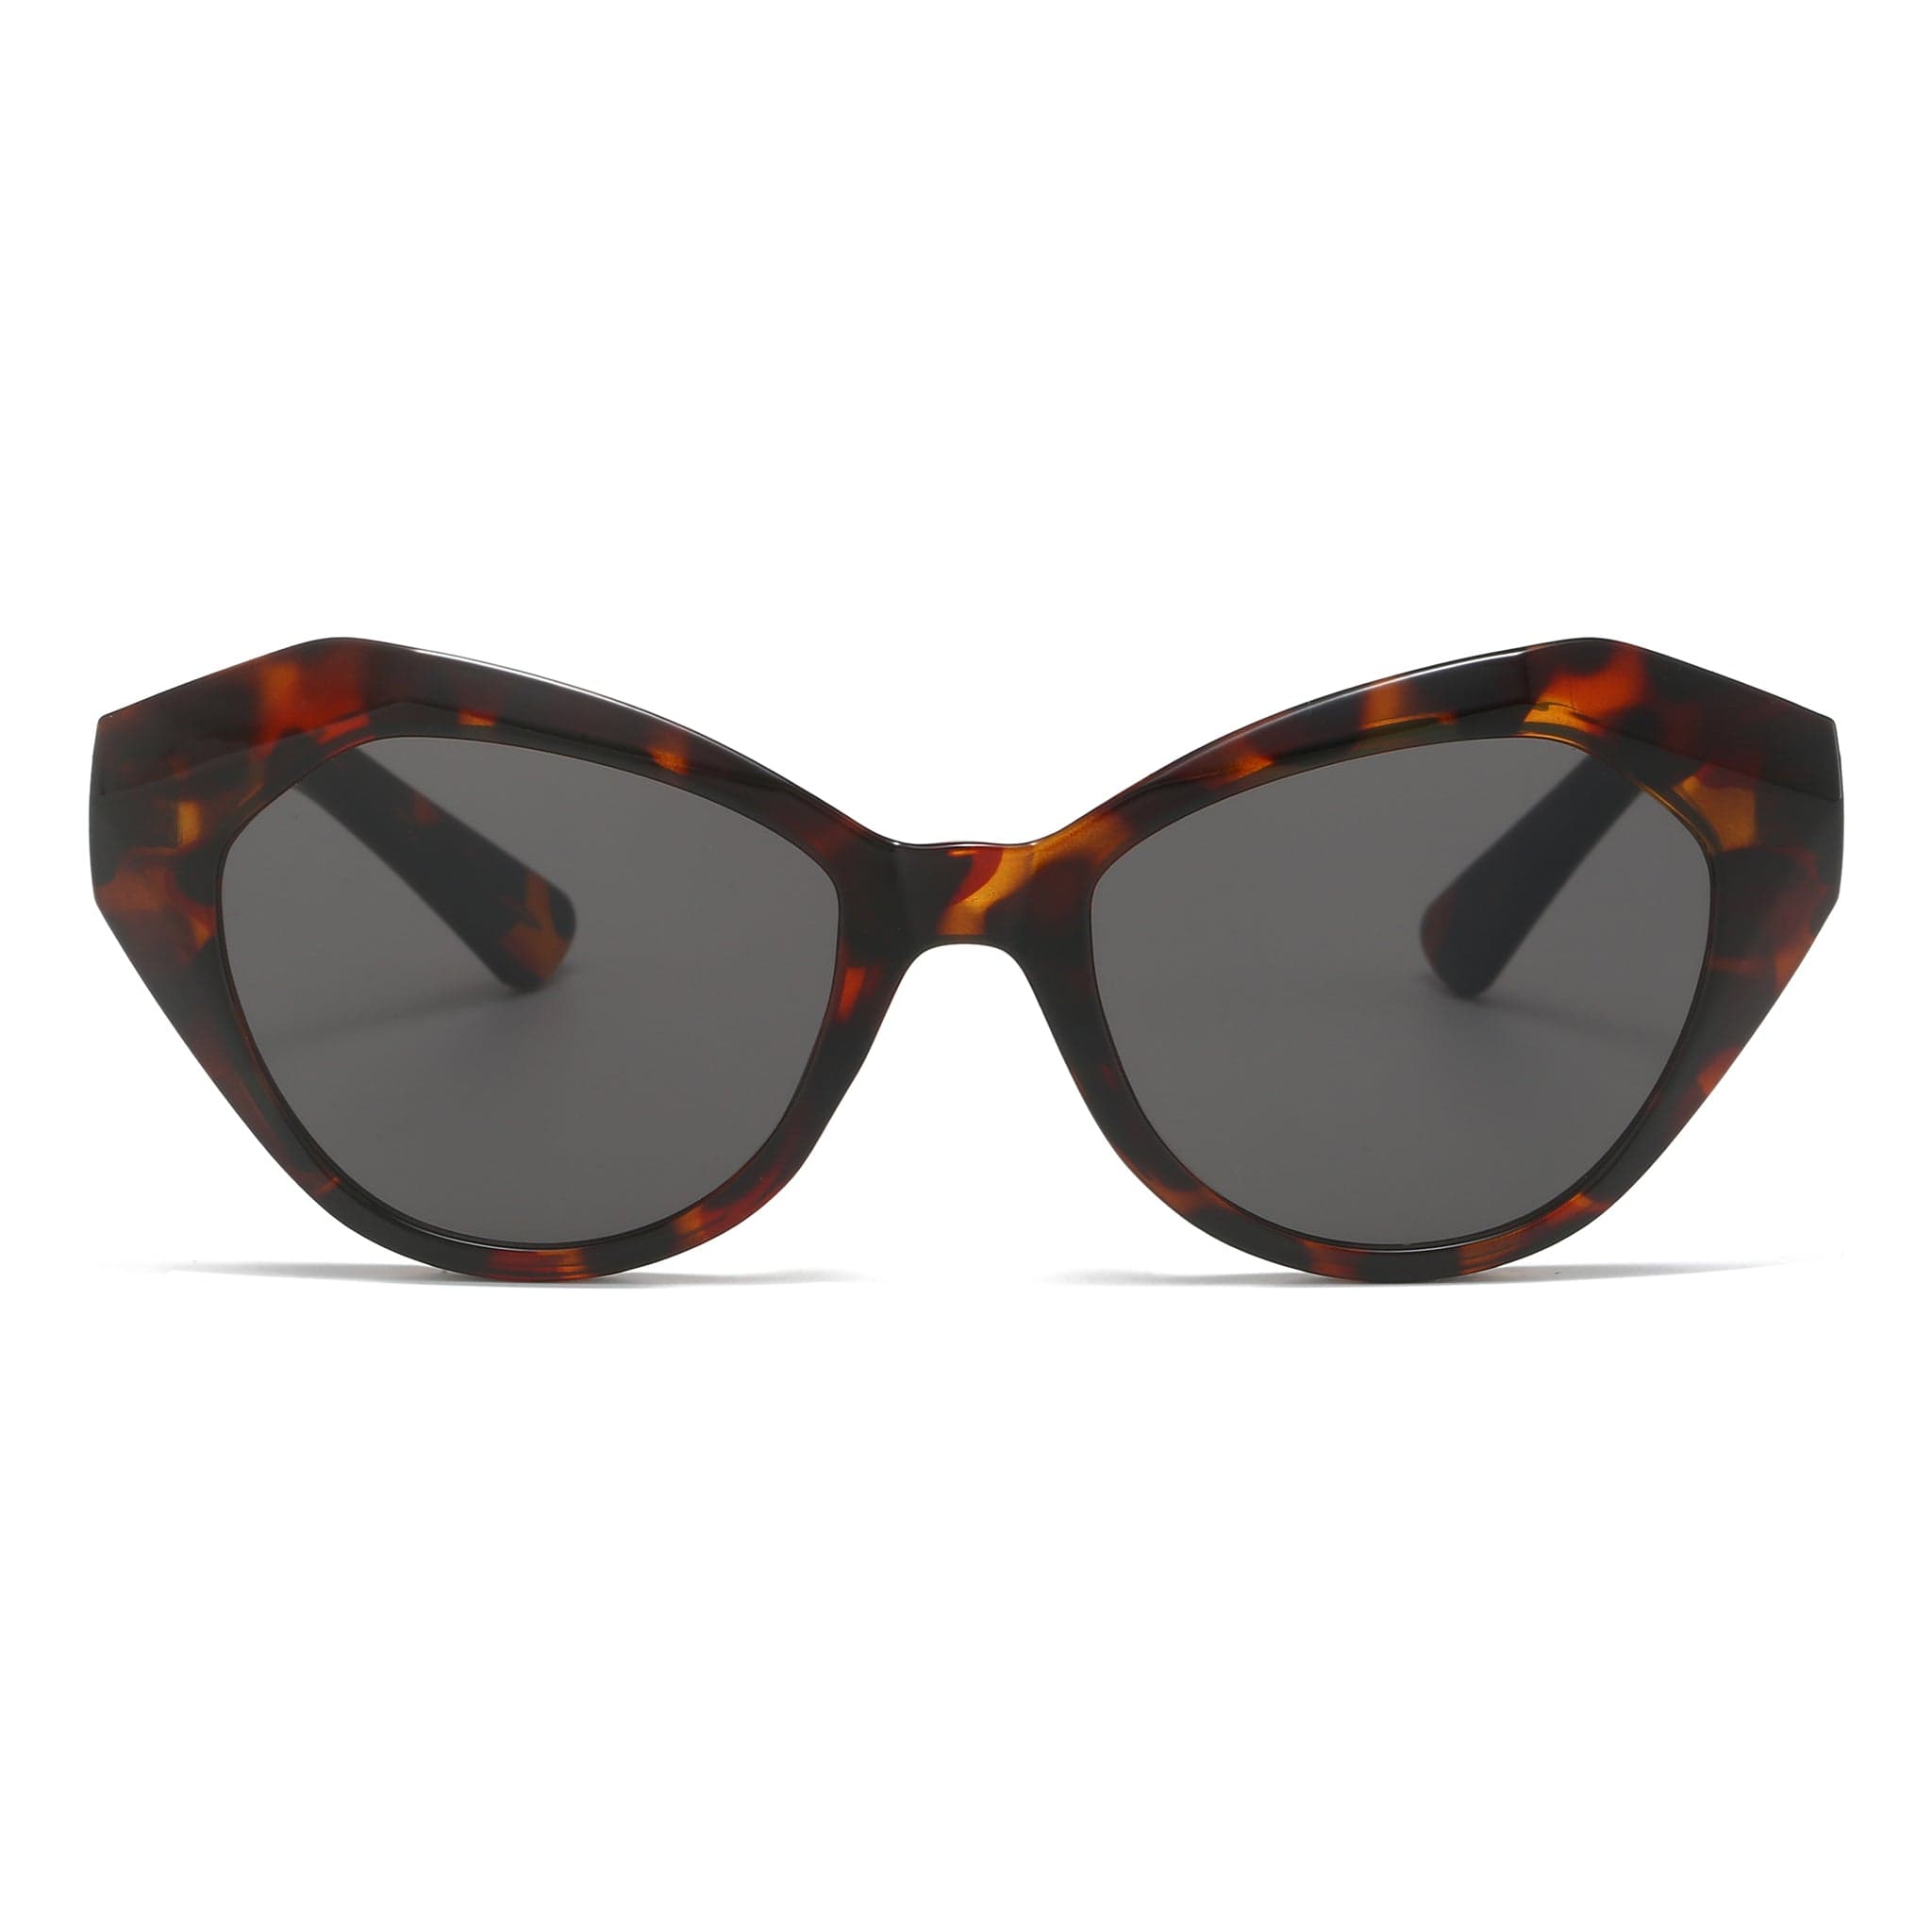 New Arrival Sunglasses at Giustizieri Vecchi: Latest Trends